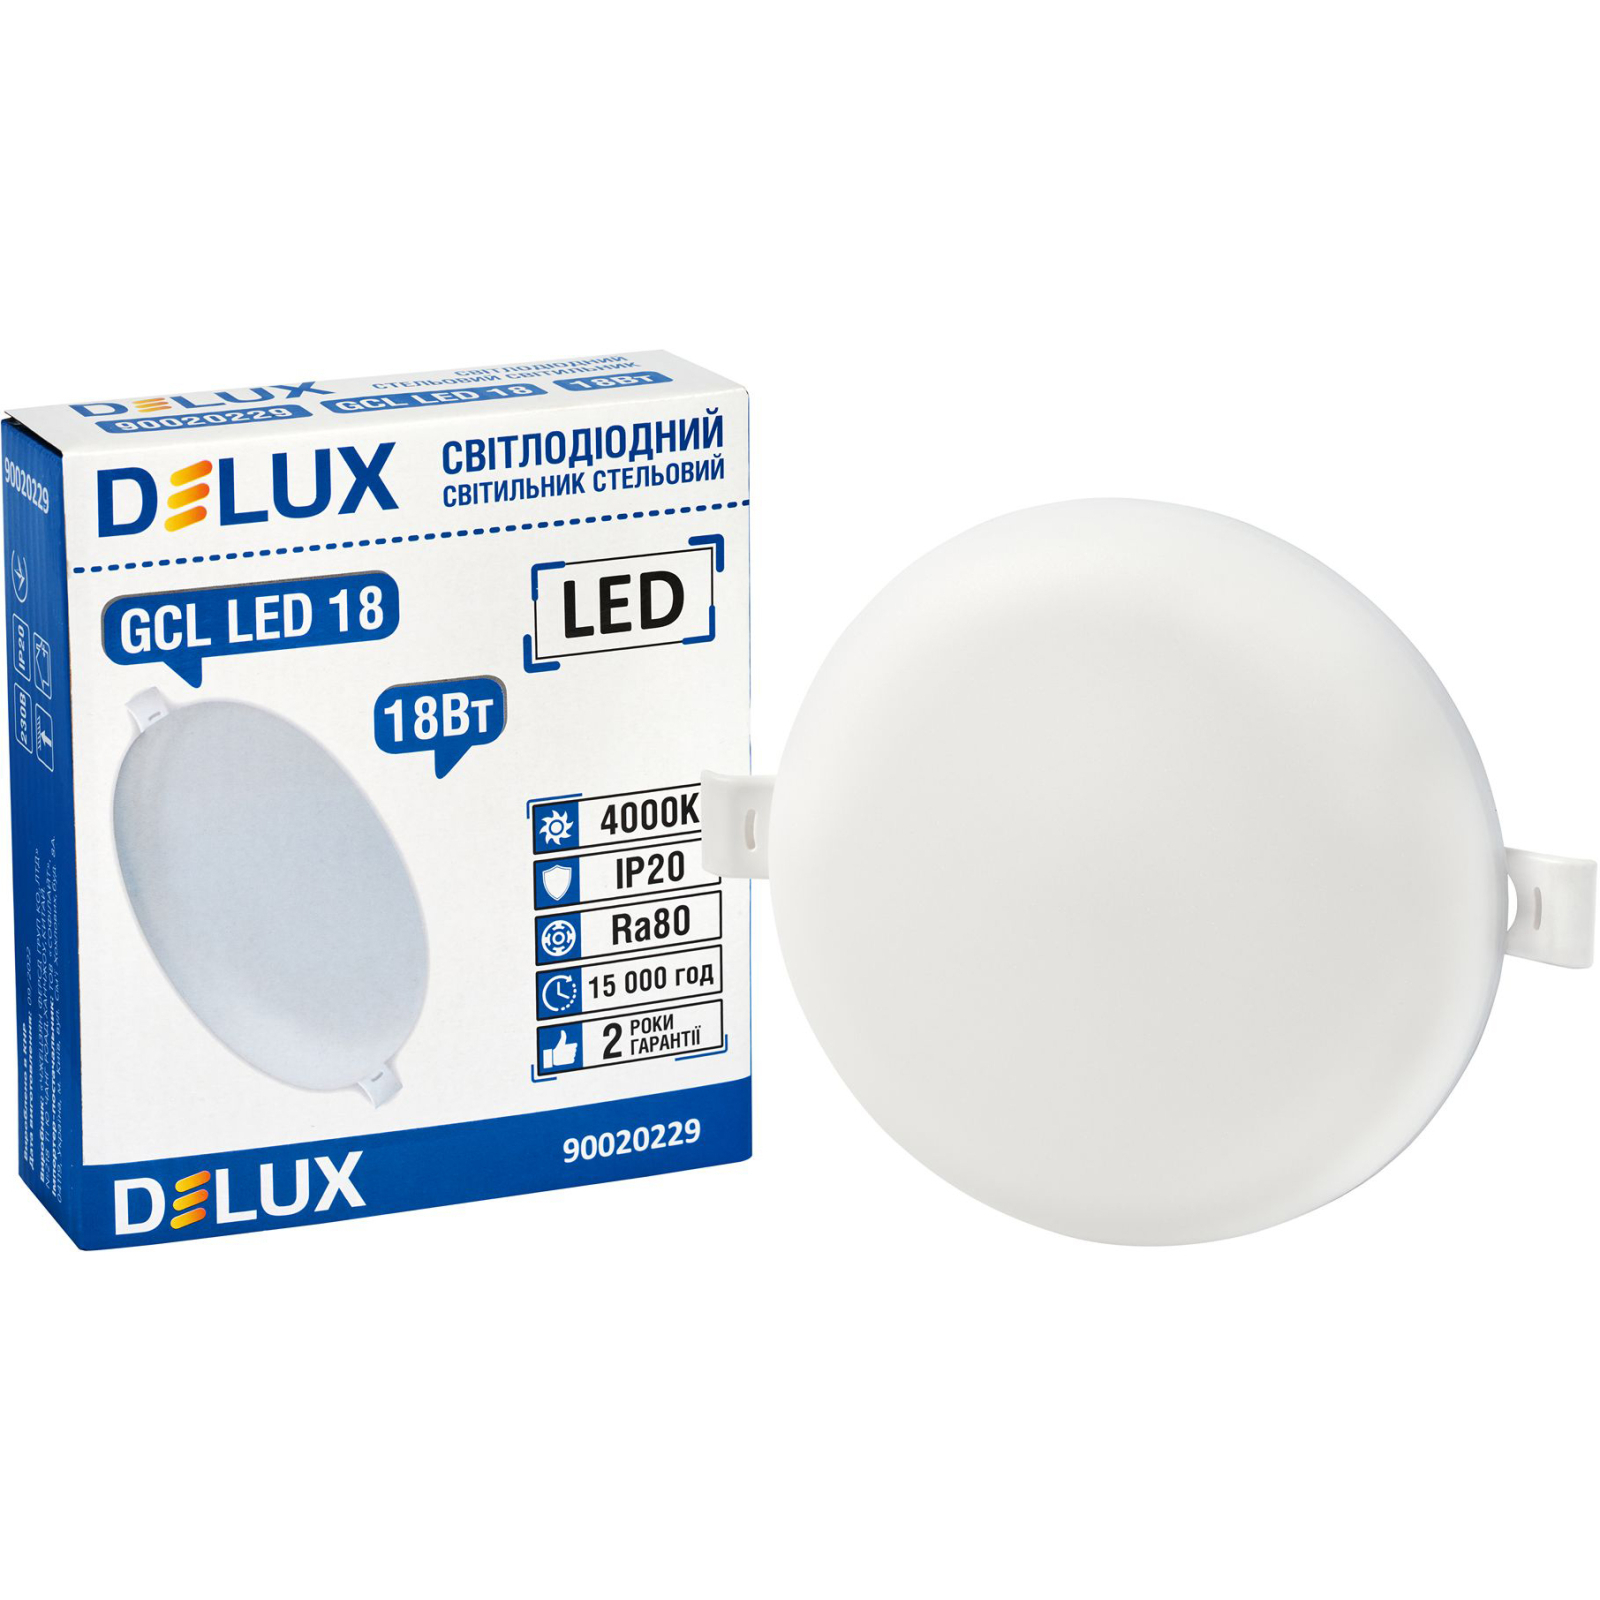 Светильник Delux GCL LED 18 4000К 18Вт 230В ROUND (90020229) изображение 2